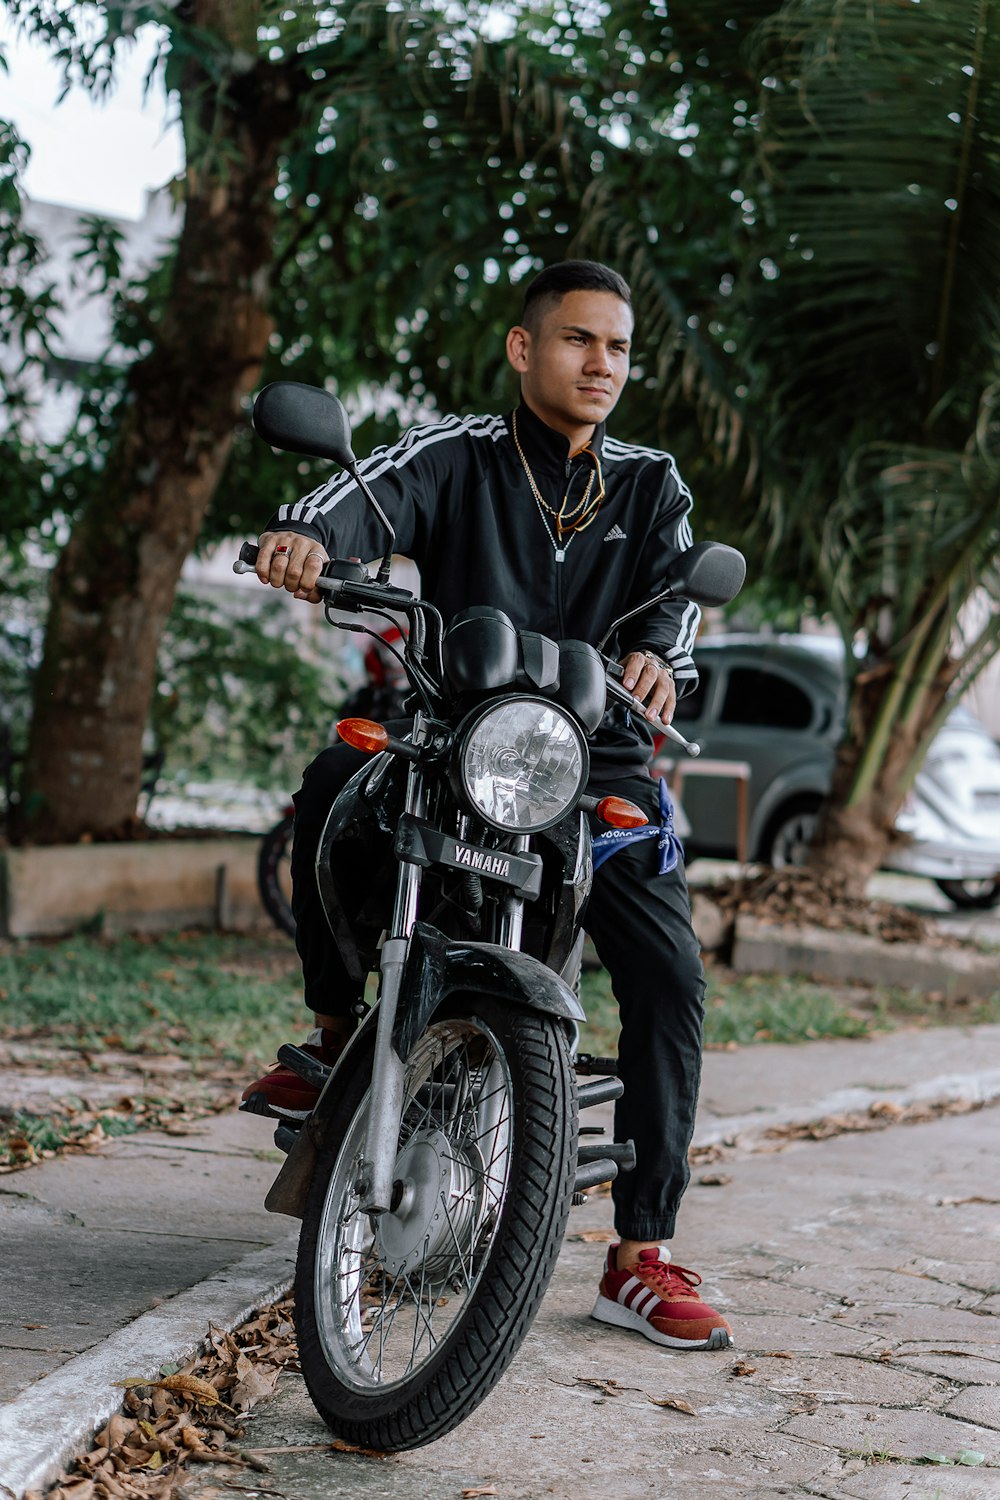 Uomo in giacca a righe bianche e nere in sella a una moto nera foto –  Trasporto Immagine gratuita su Unsplash